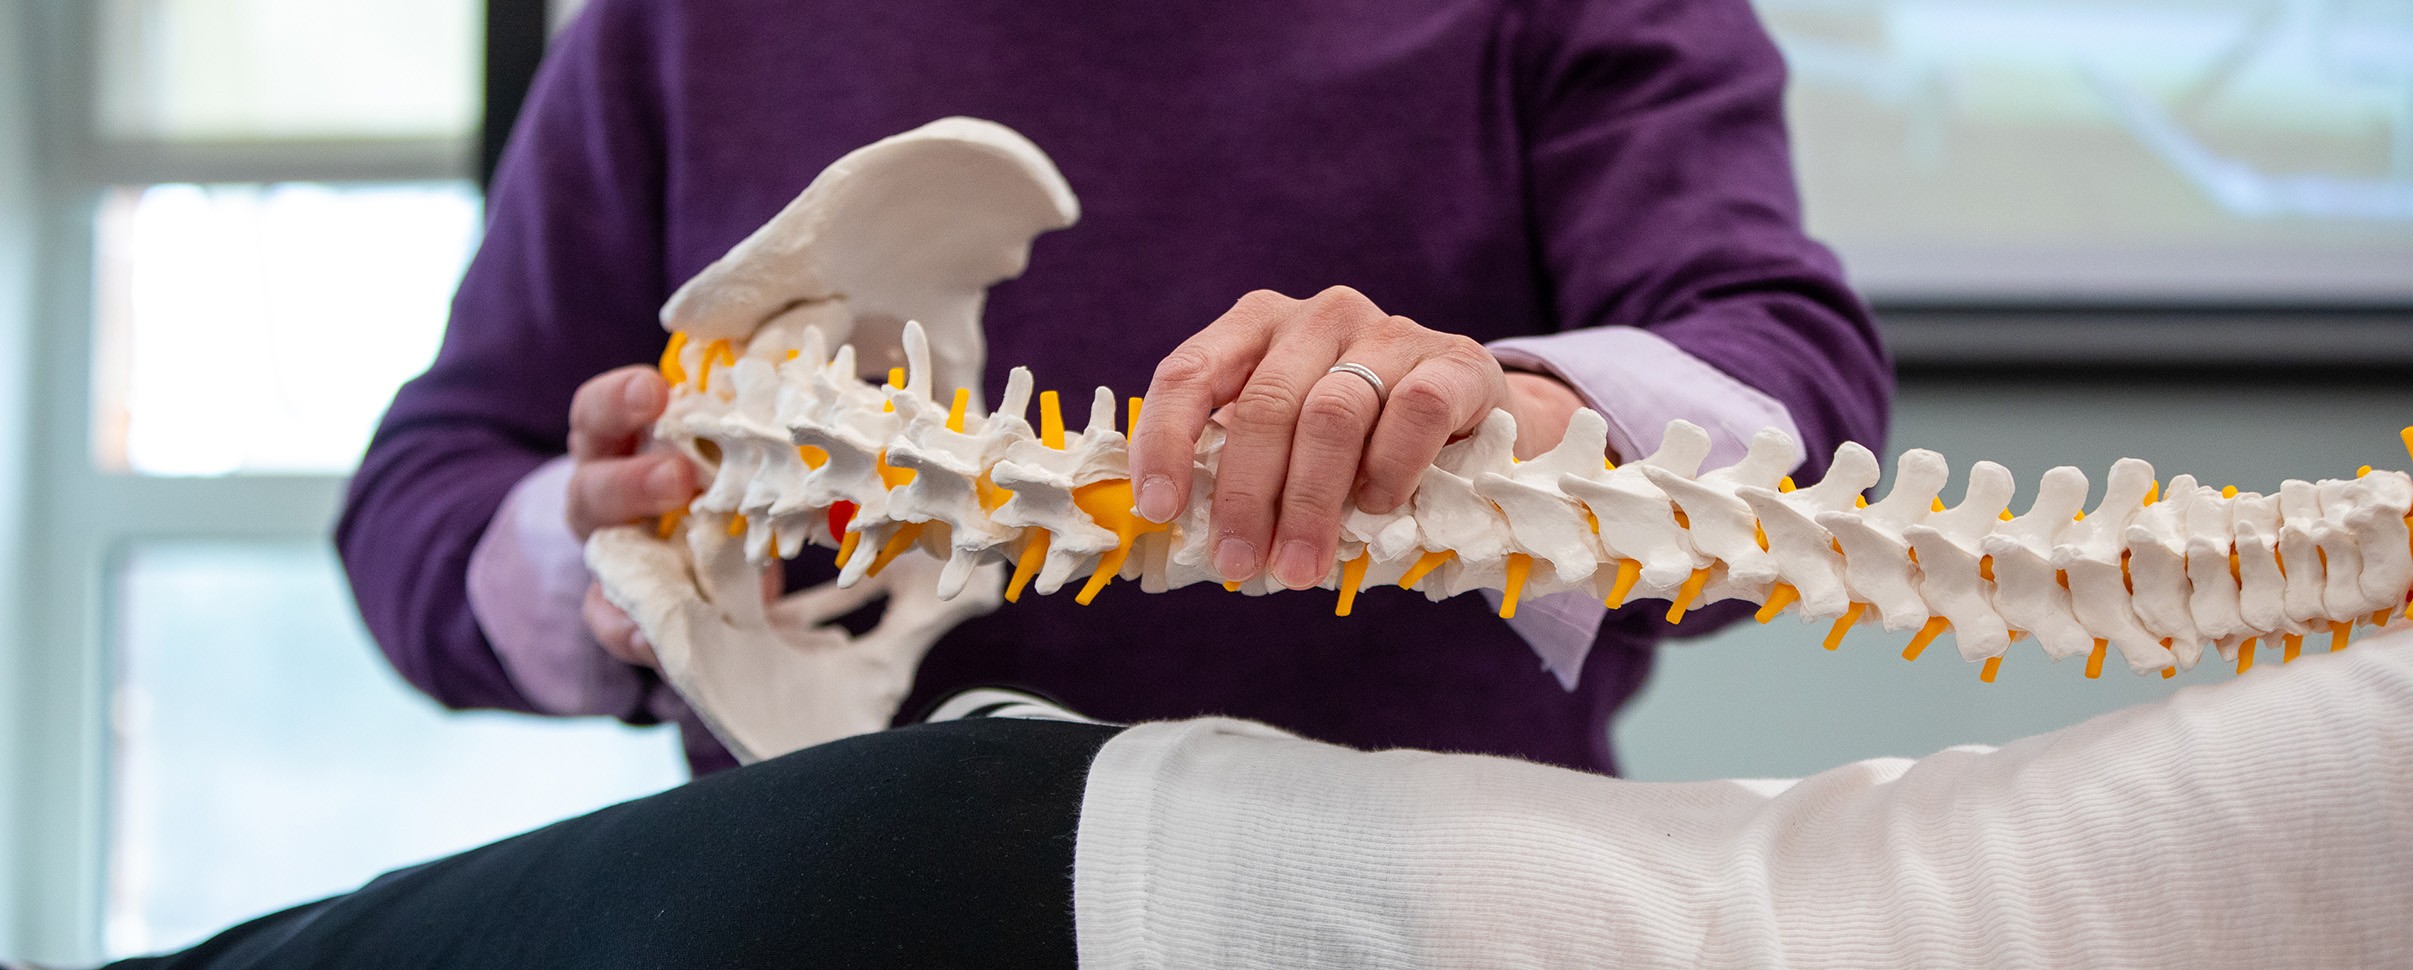 Hands holding skeletal model of spine